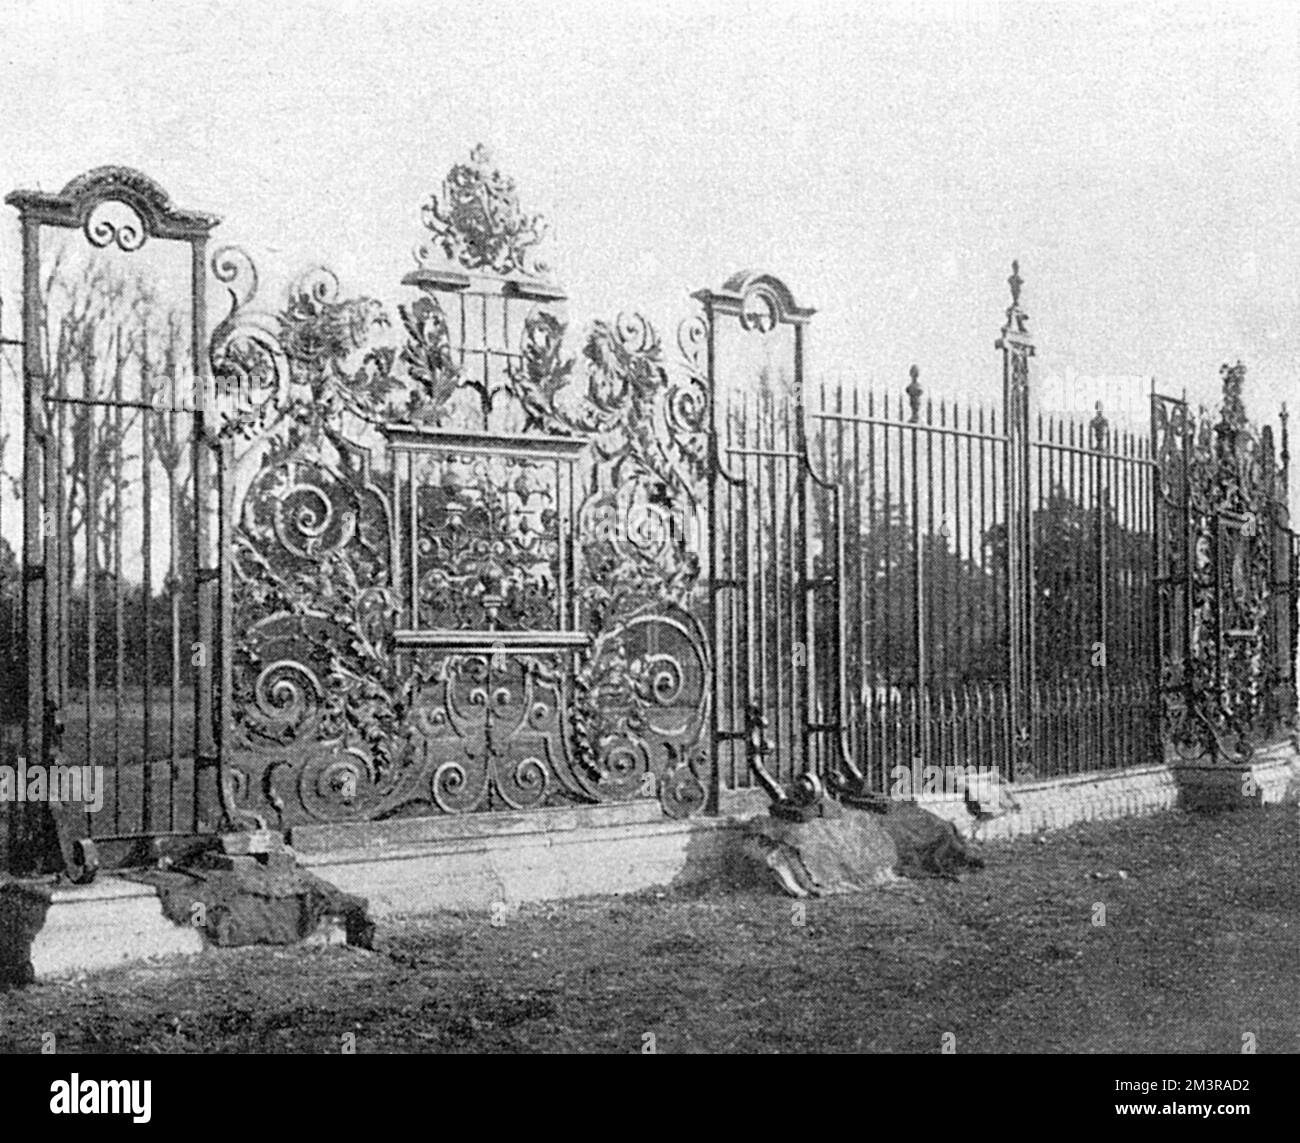 Aufwändige Schriftrollen und Blattwerk auf den flachen, gehämmerten Eisengeländern in Hampton Court, London Datum: 1902 Stockfoto